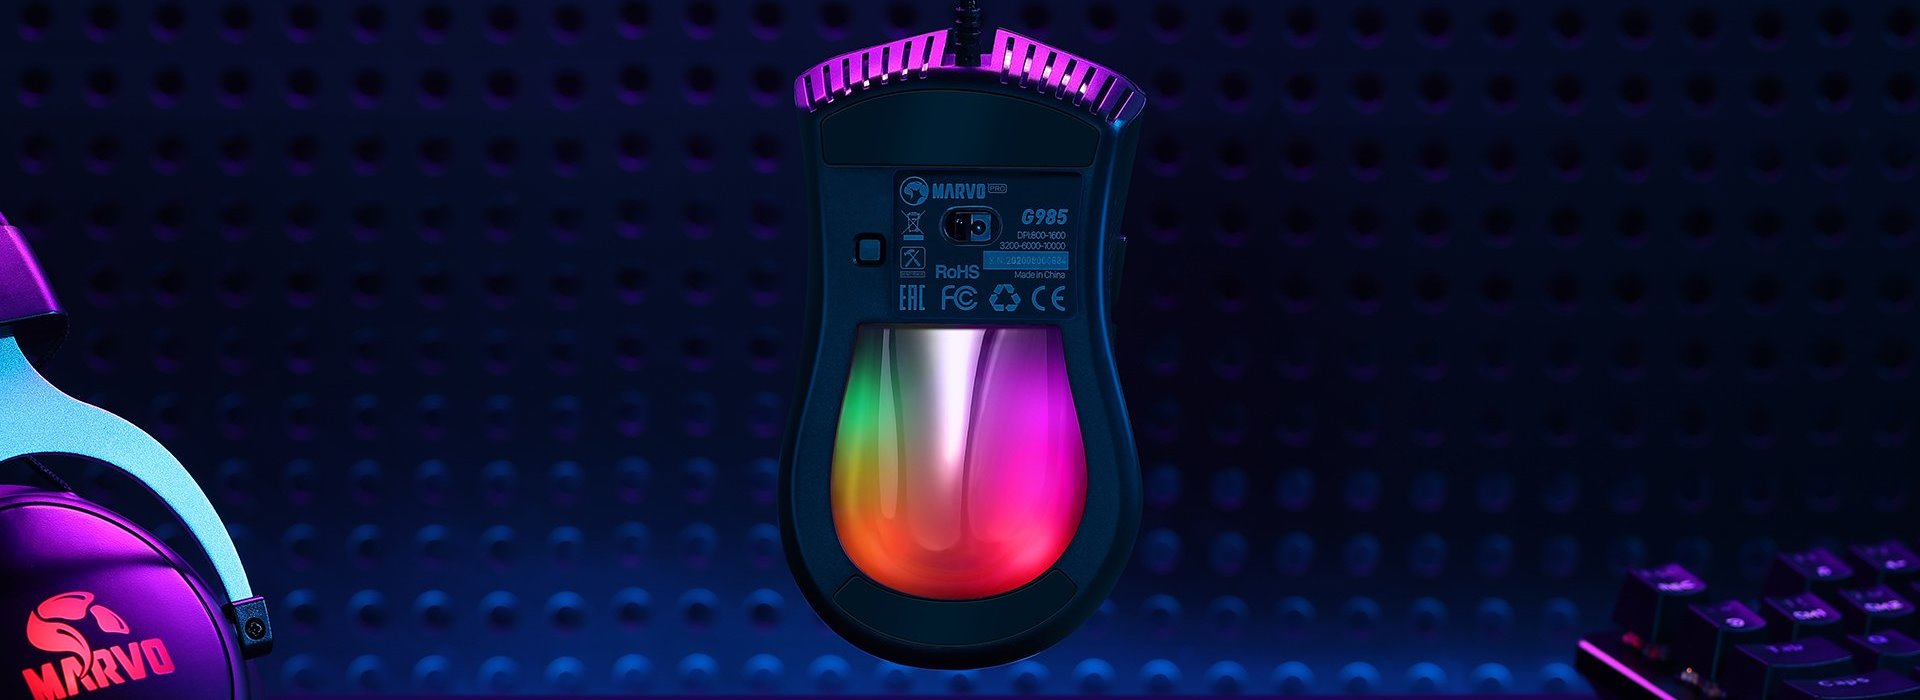 Myš Marvo G985 se může pochlubit velice atraktivním vzhledem s nastavitelným RGB osvětlením, které zaručeně zútulní vaše herní doupě.